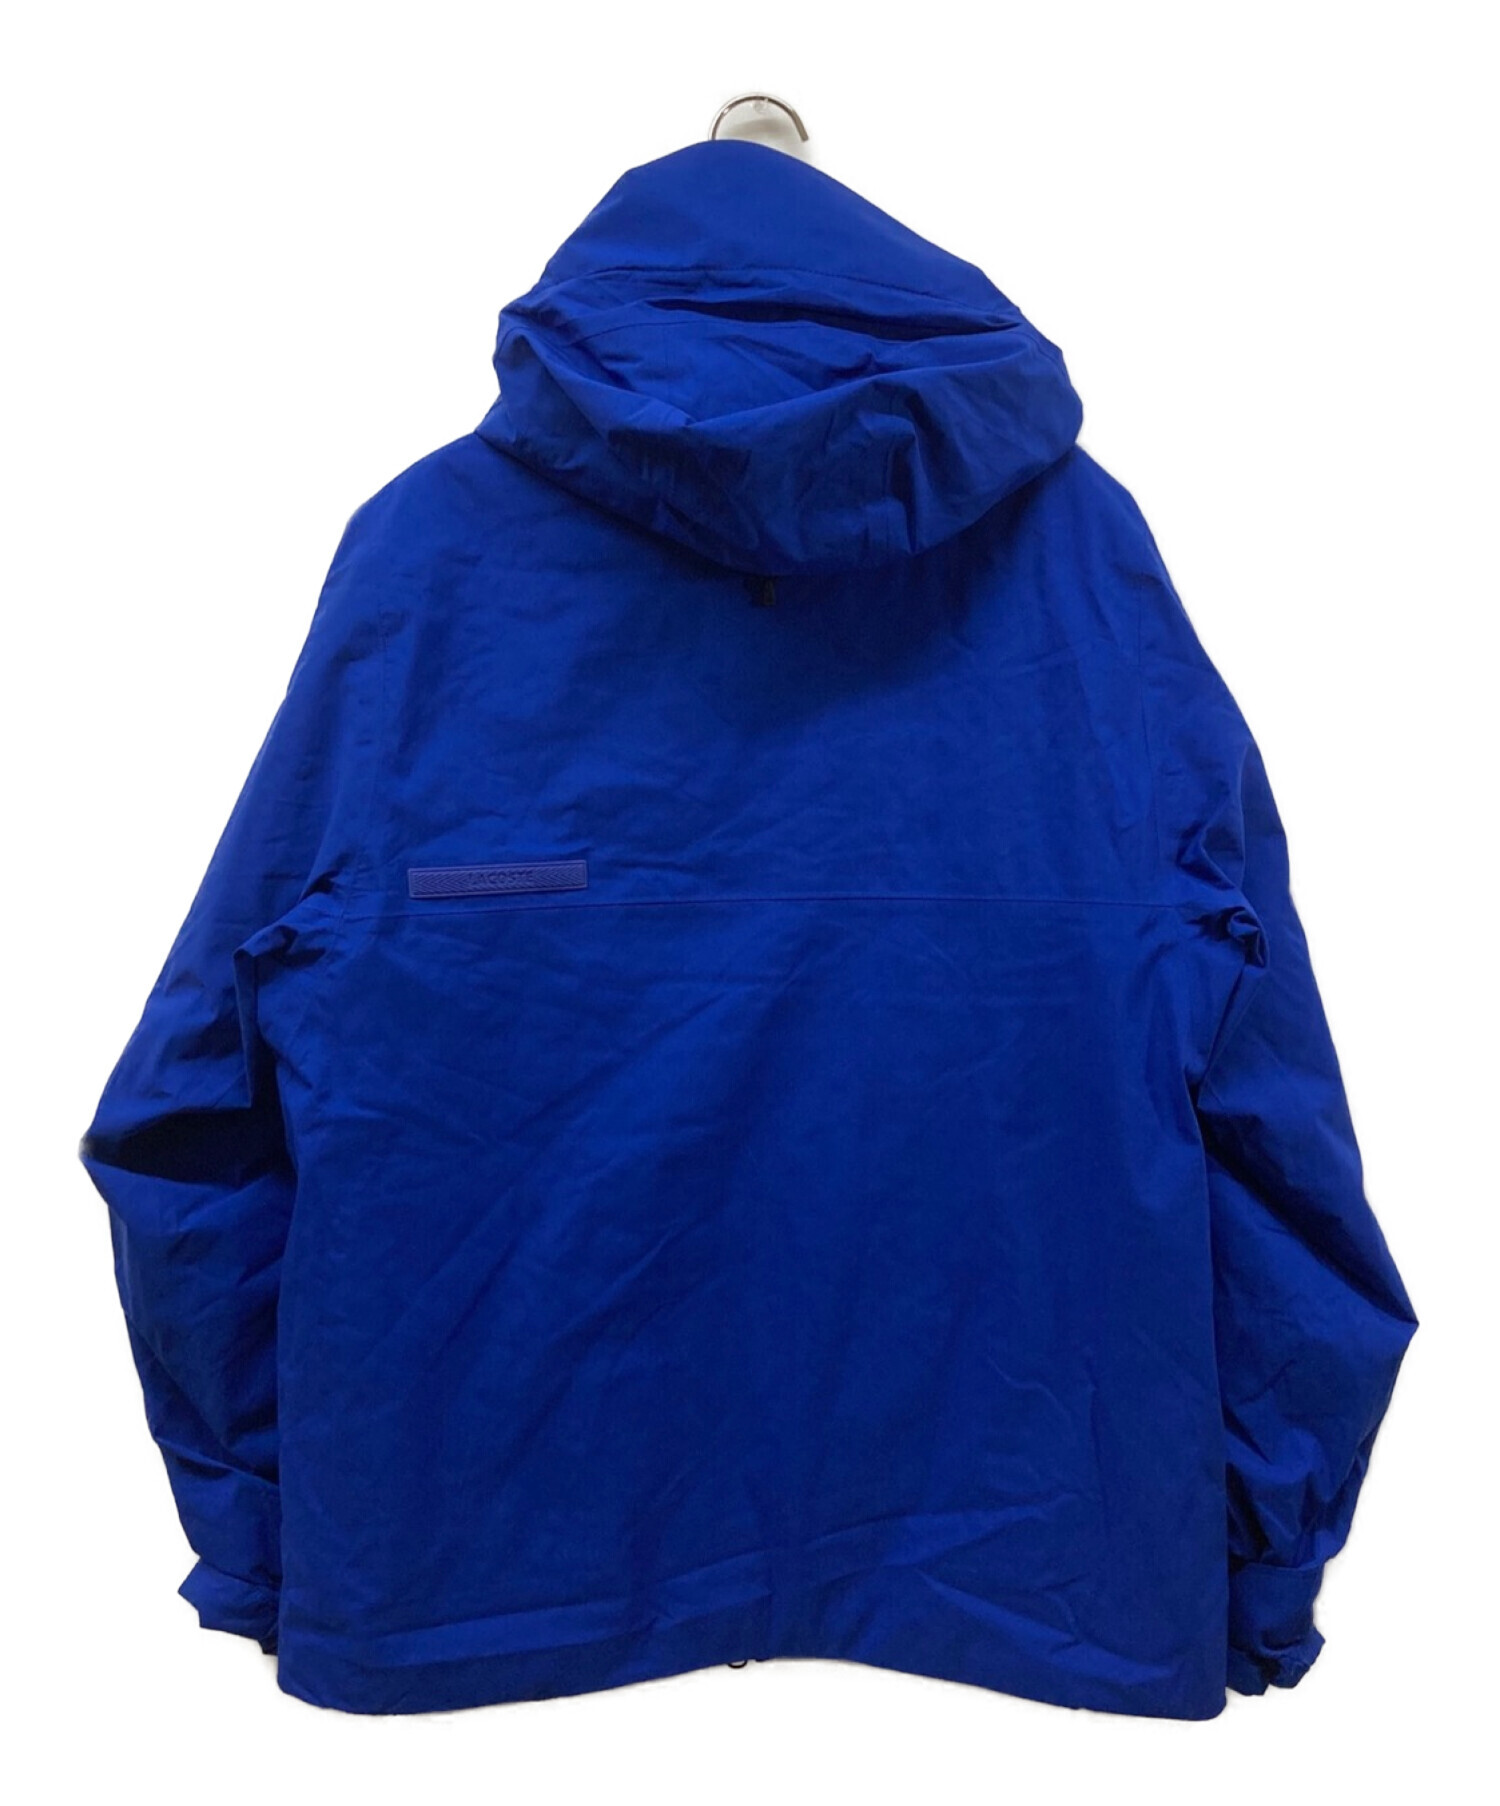 LACOSTE (ラコステ) 撥水フィードジャケット BH2513 中綿ジャケット ブルー サイズ:48